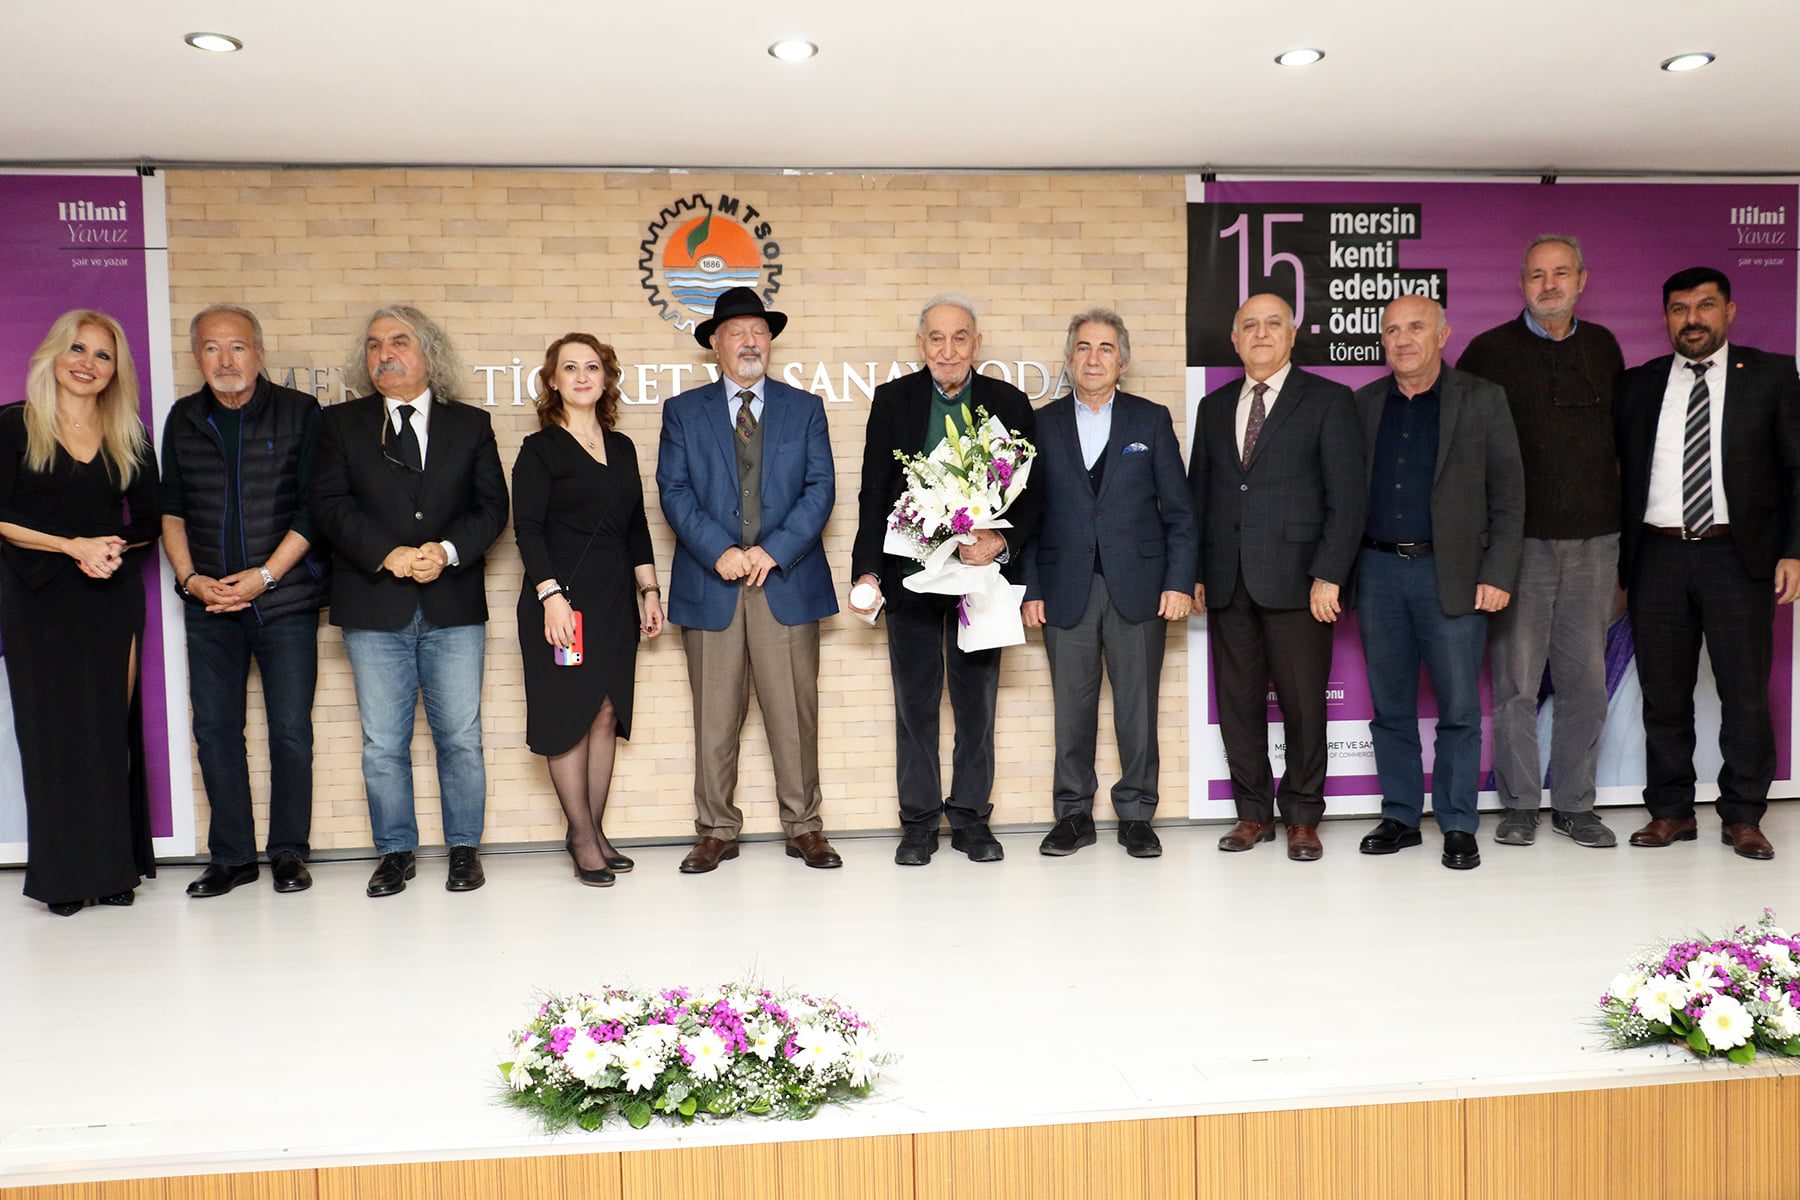 Mersin Kenti Edebiyat Ödülü Hilmi Yavuz’a Verildi